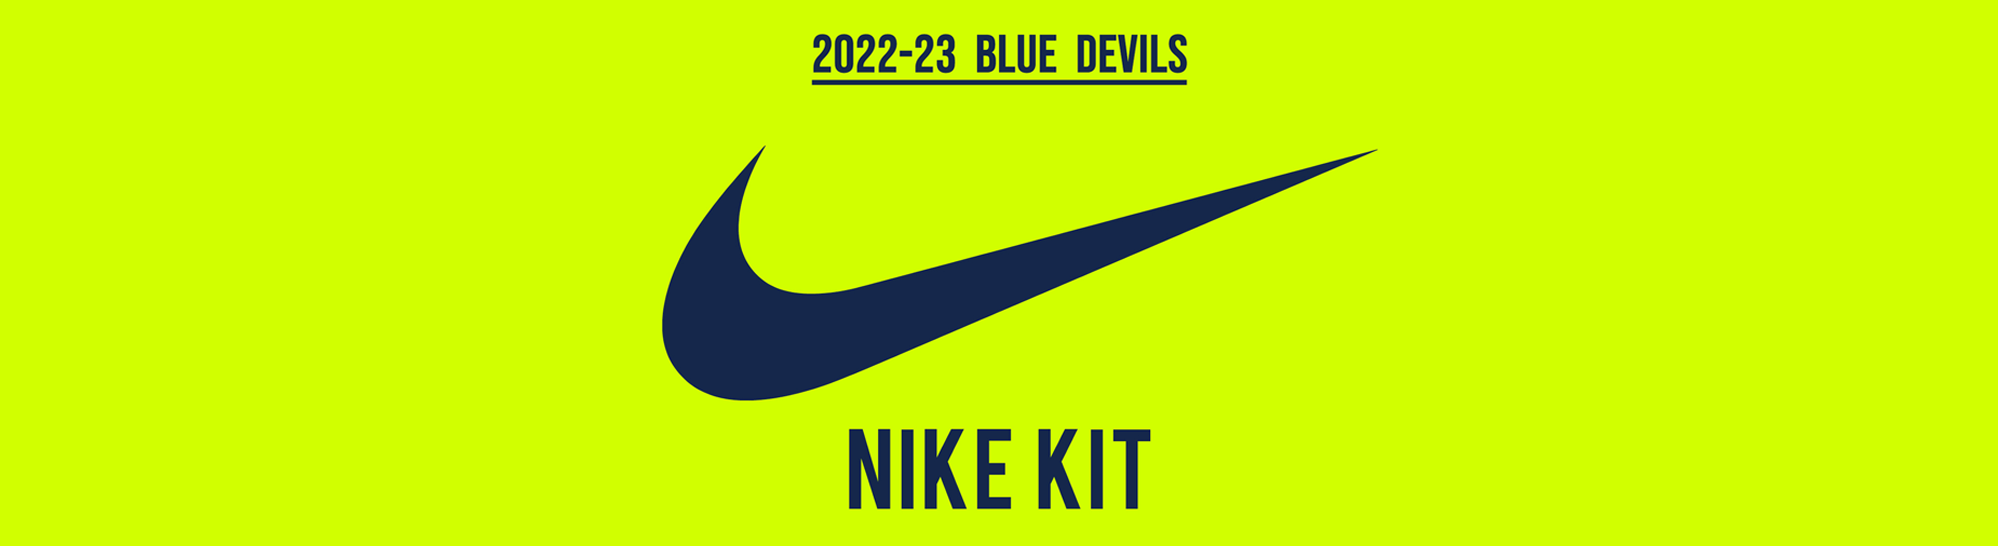 Nike Kit - Blue Devils